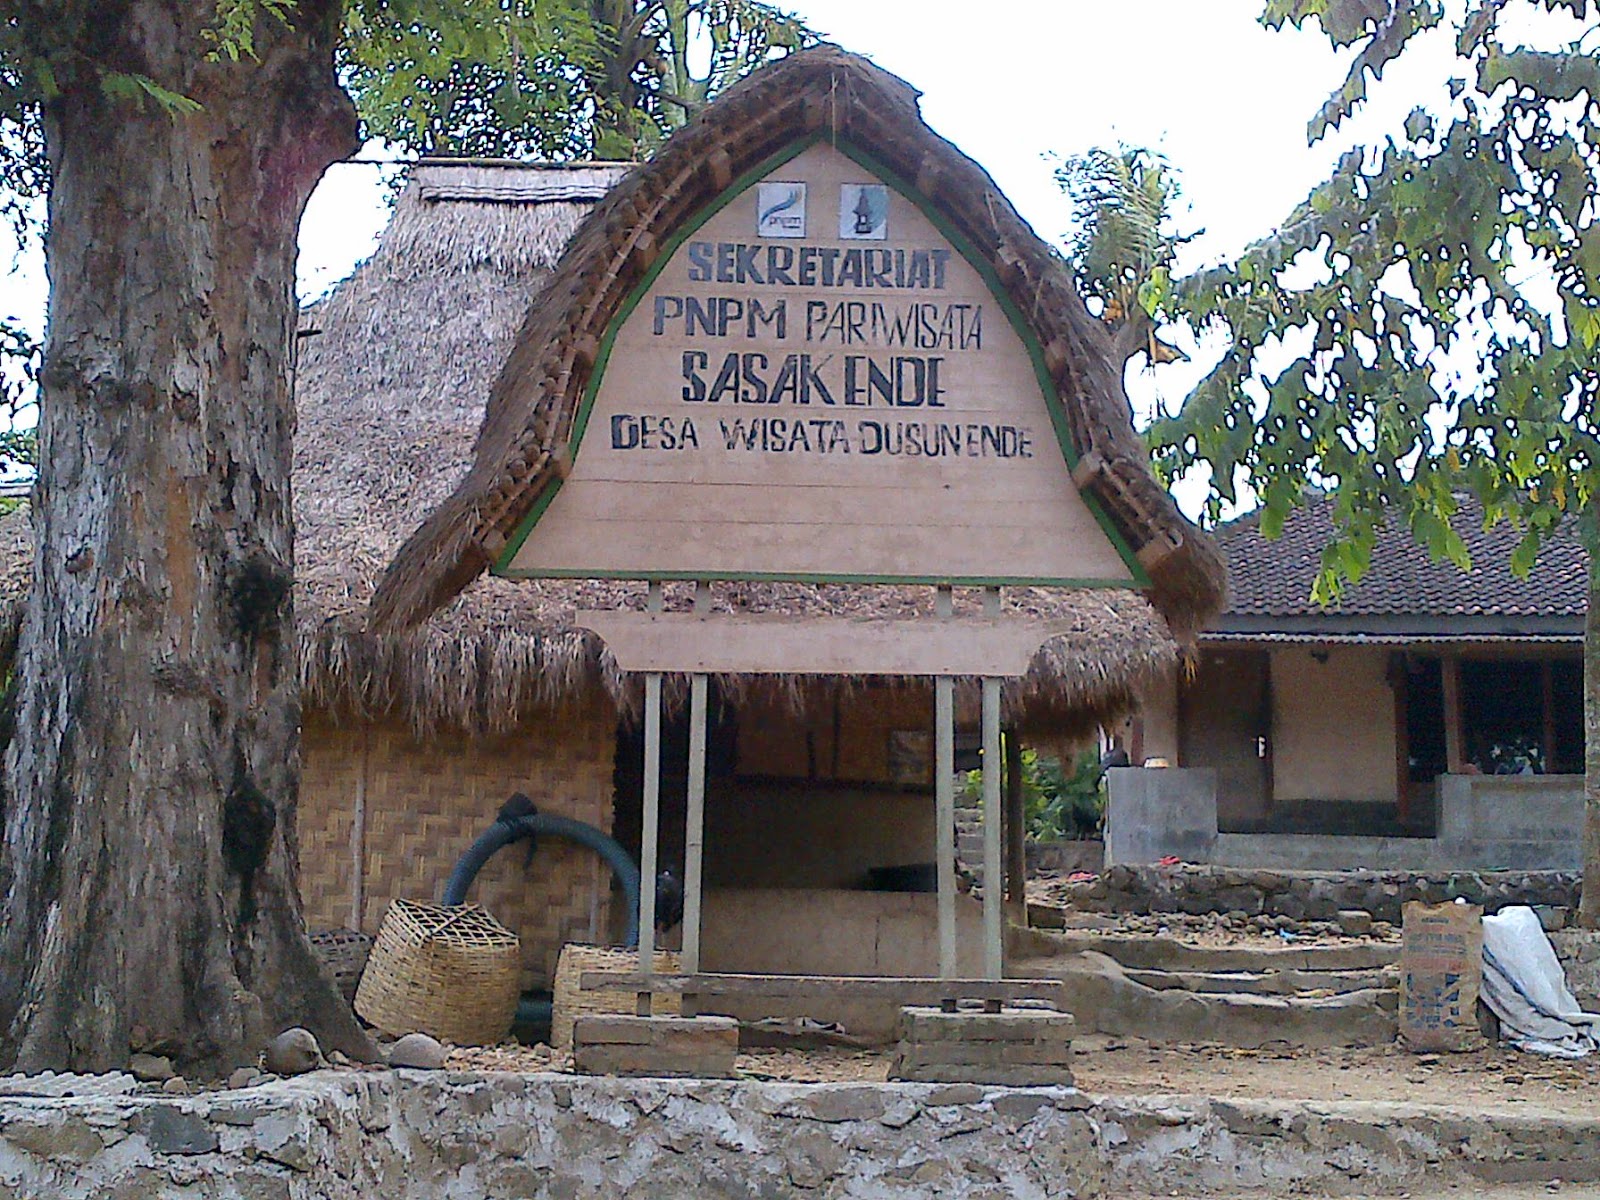 Desain Rumah Adat Jawa Barat U2013 Desainrumahkita Net Taman Mini